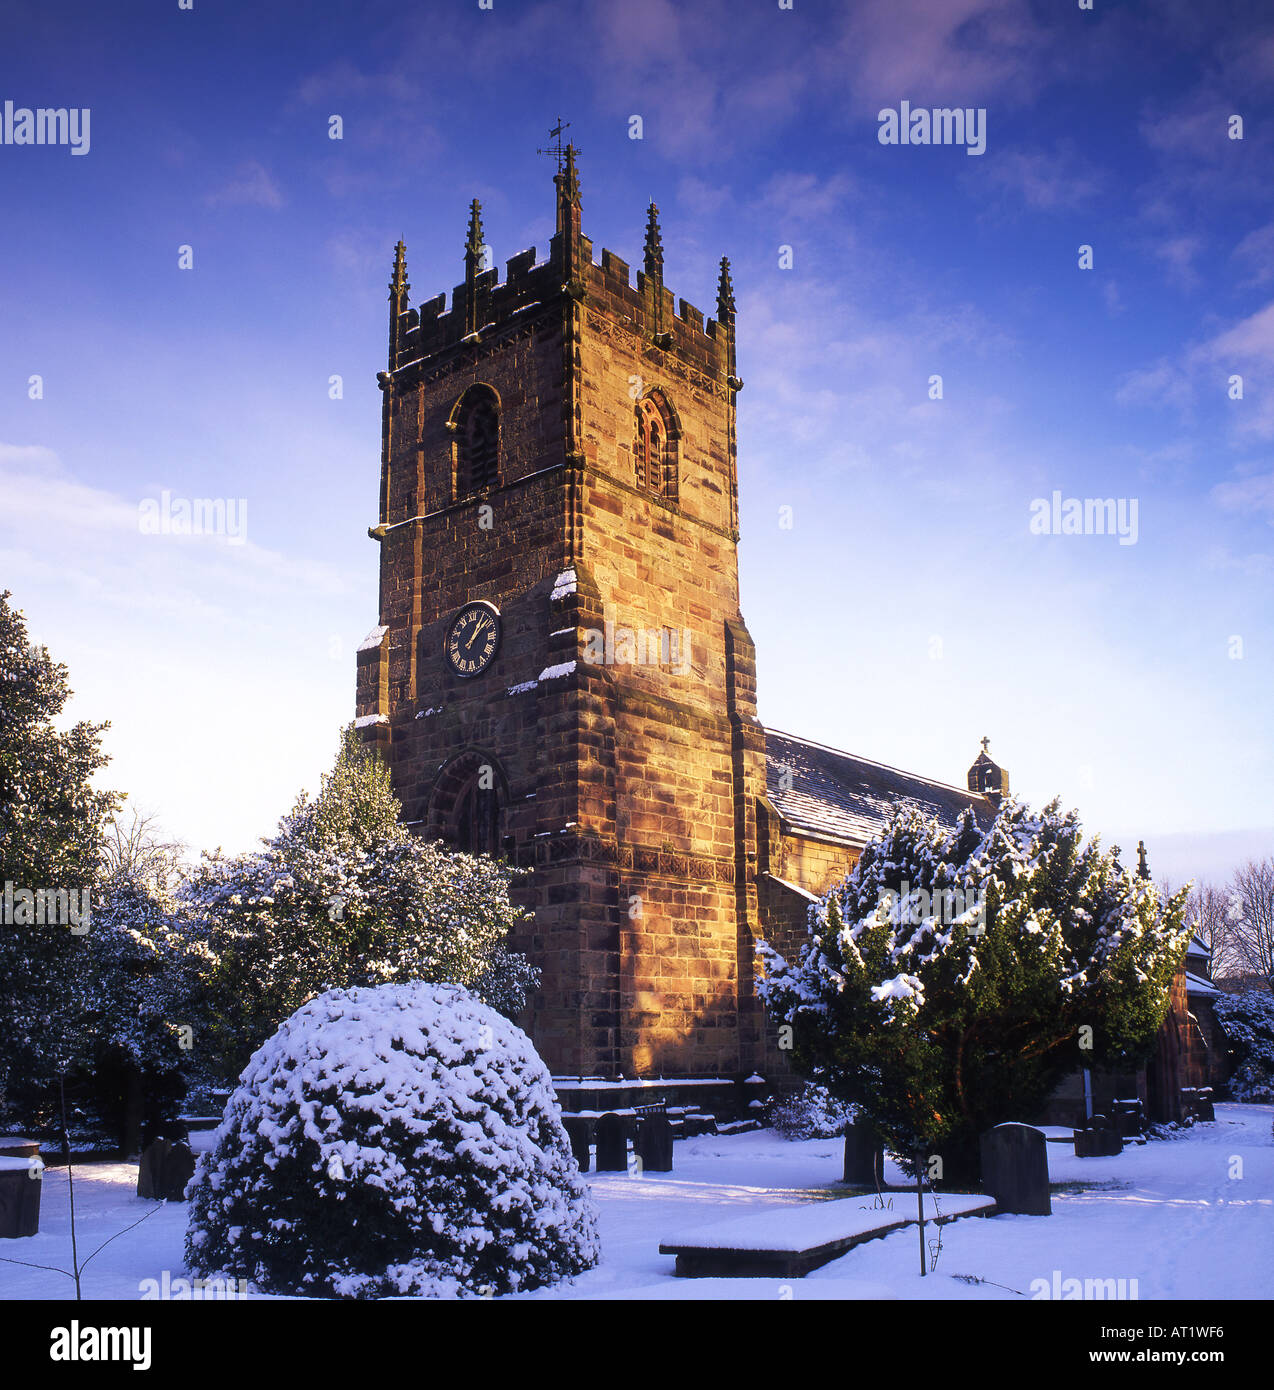 St Peter's Parish Church in Winter, Prestbury, Cheshire, England, UK Stock Photo